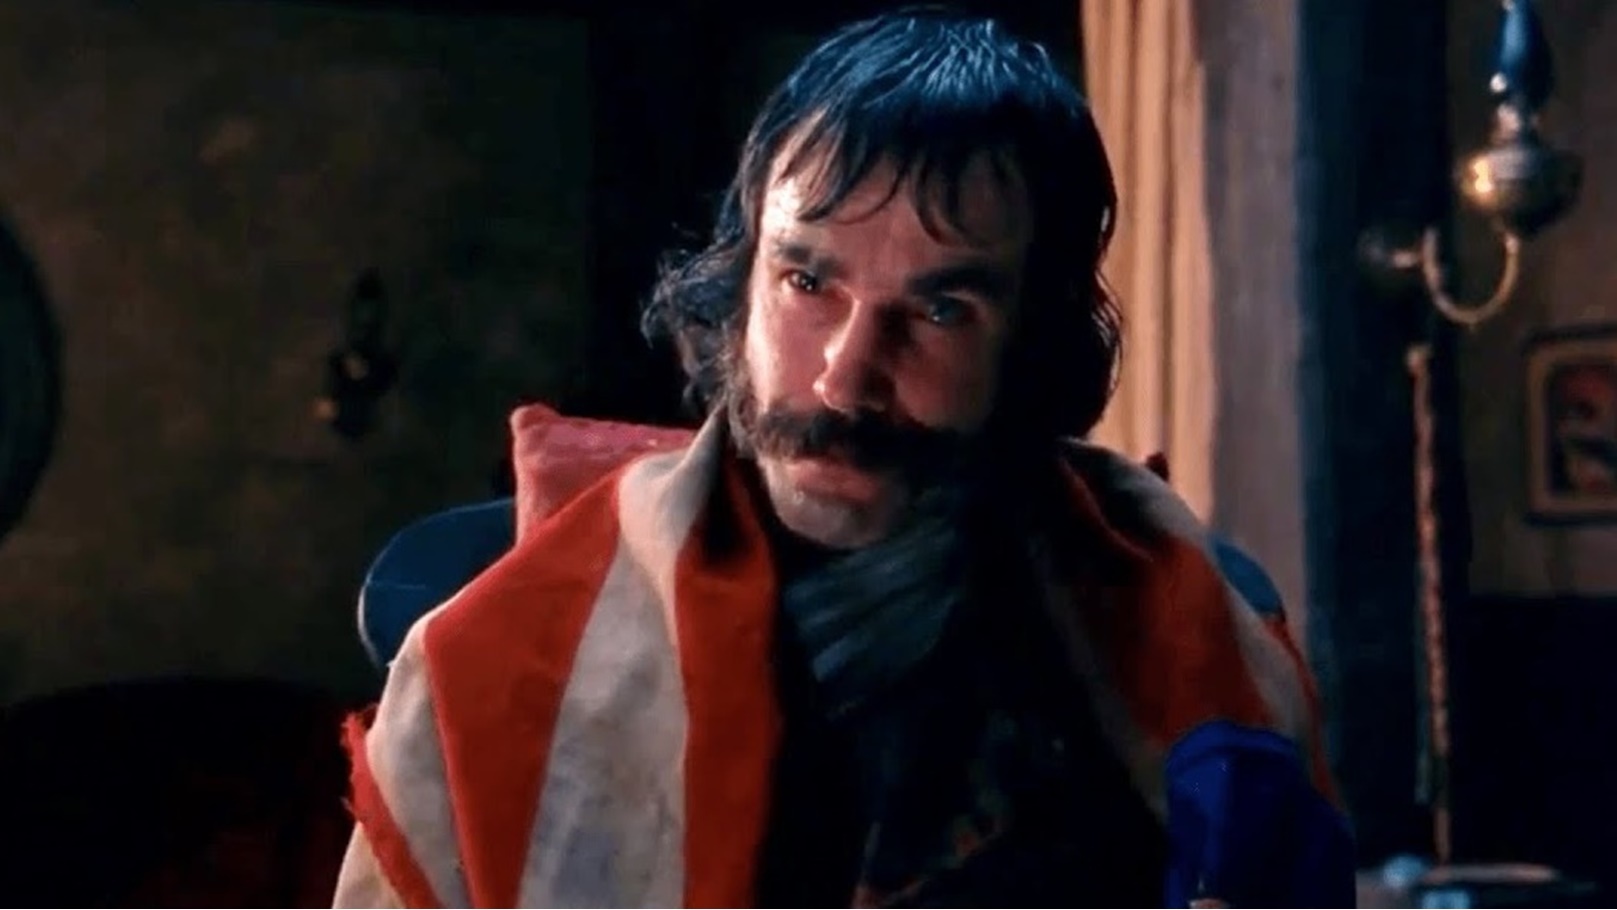 دانييل داي لويس في دور بيل الجزار من فيلم Gangs of New York